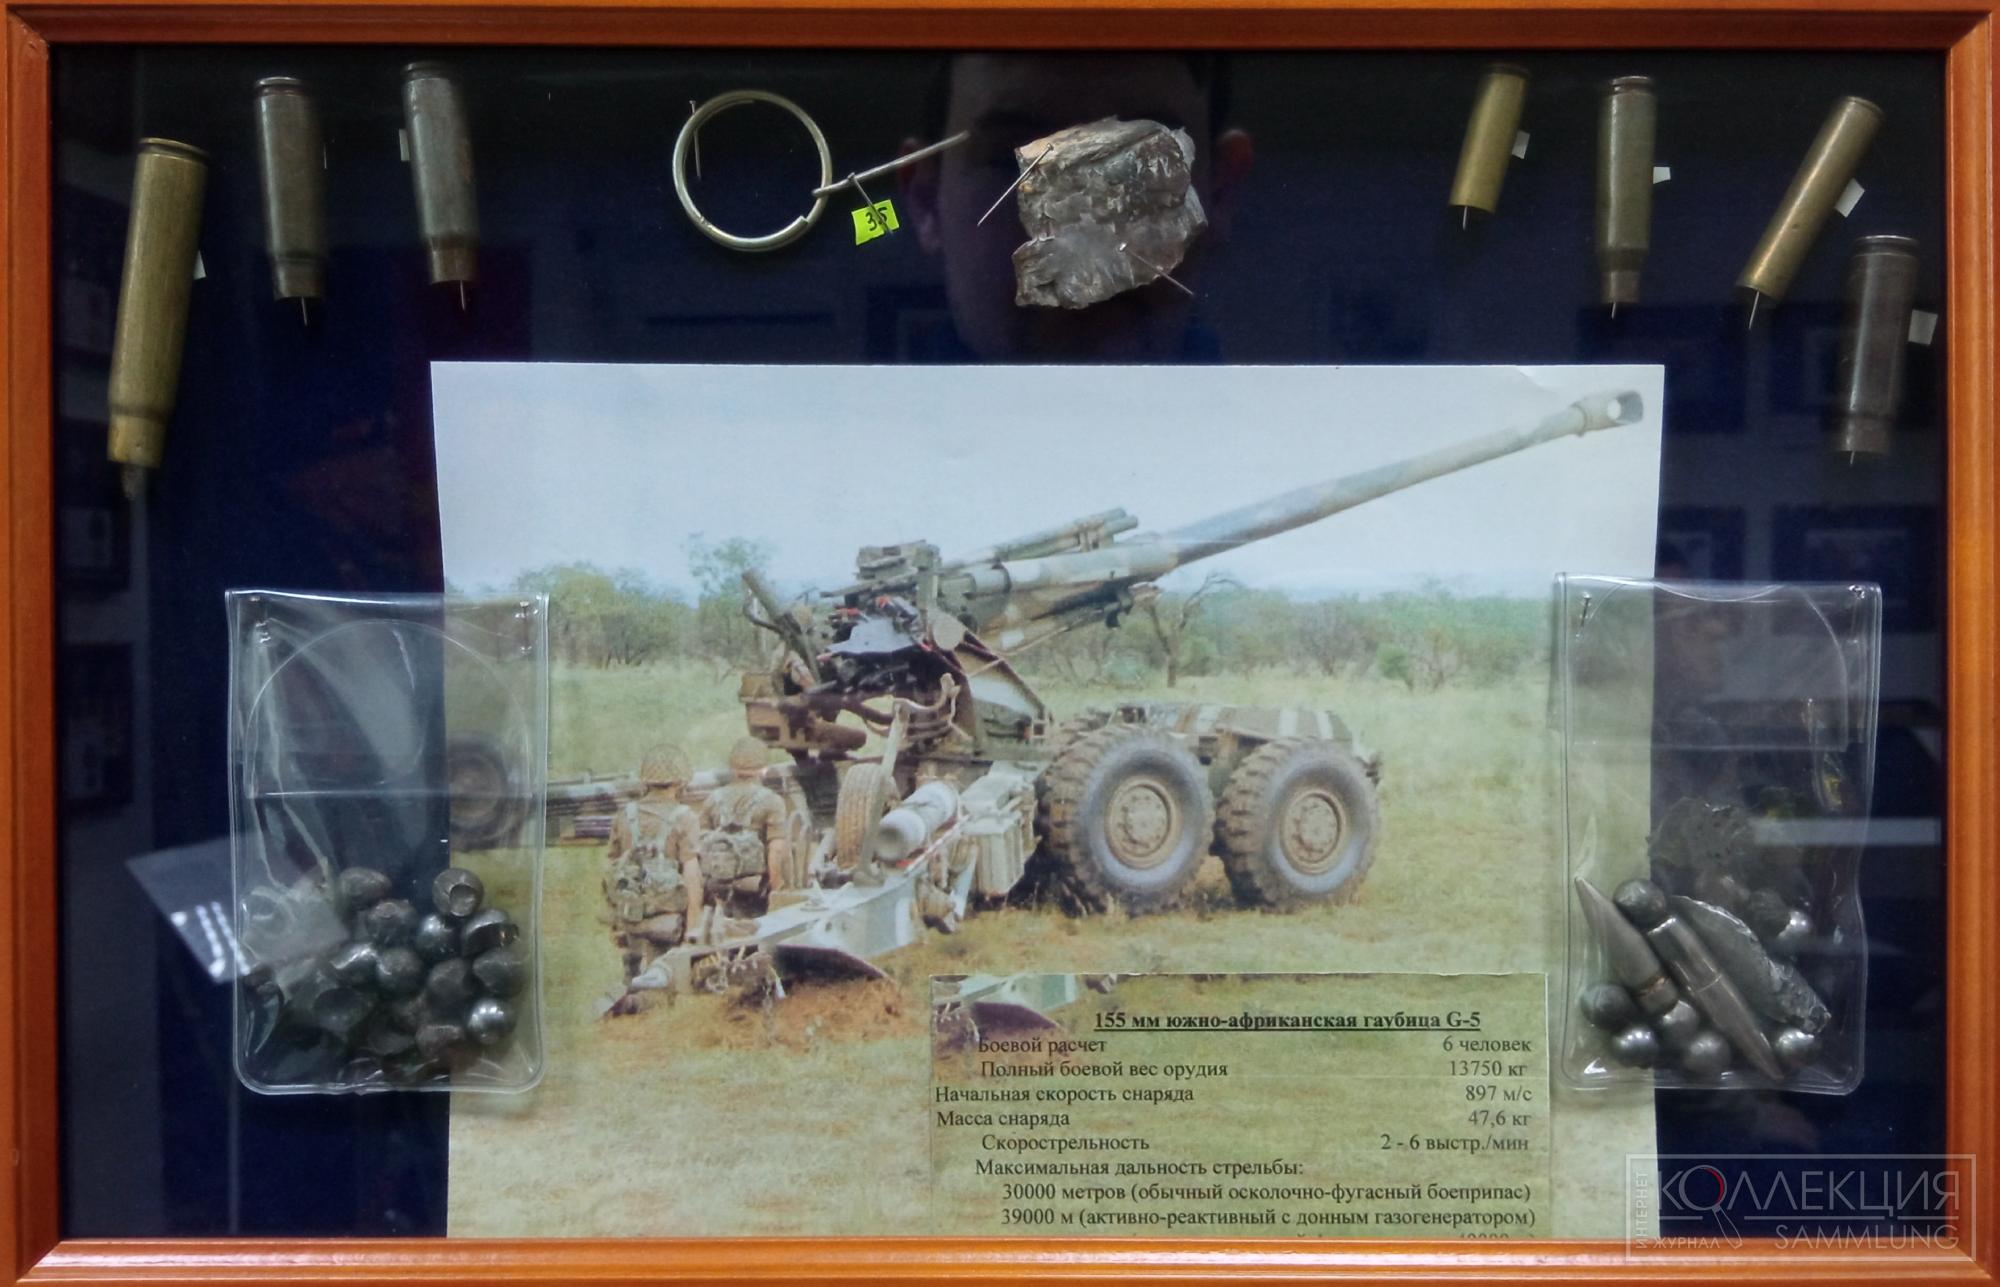 Осколки снарядов ЮАР, гильзы и пули различных видов стрелкового оружия ФАПЛА. Музей Союза ветеранов Анголы